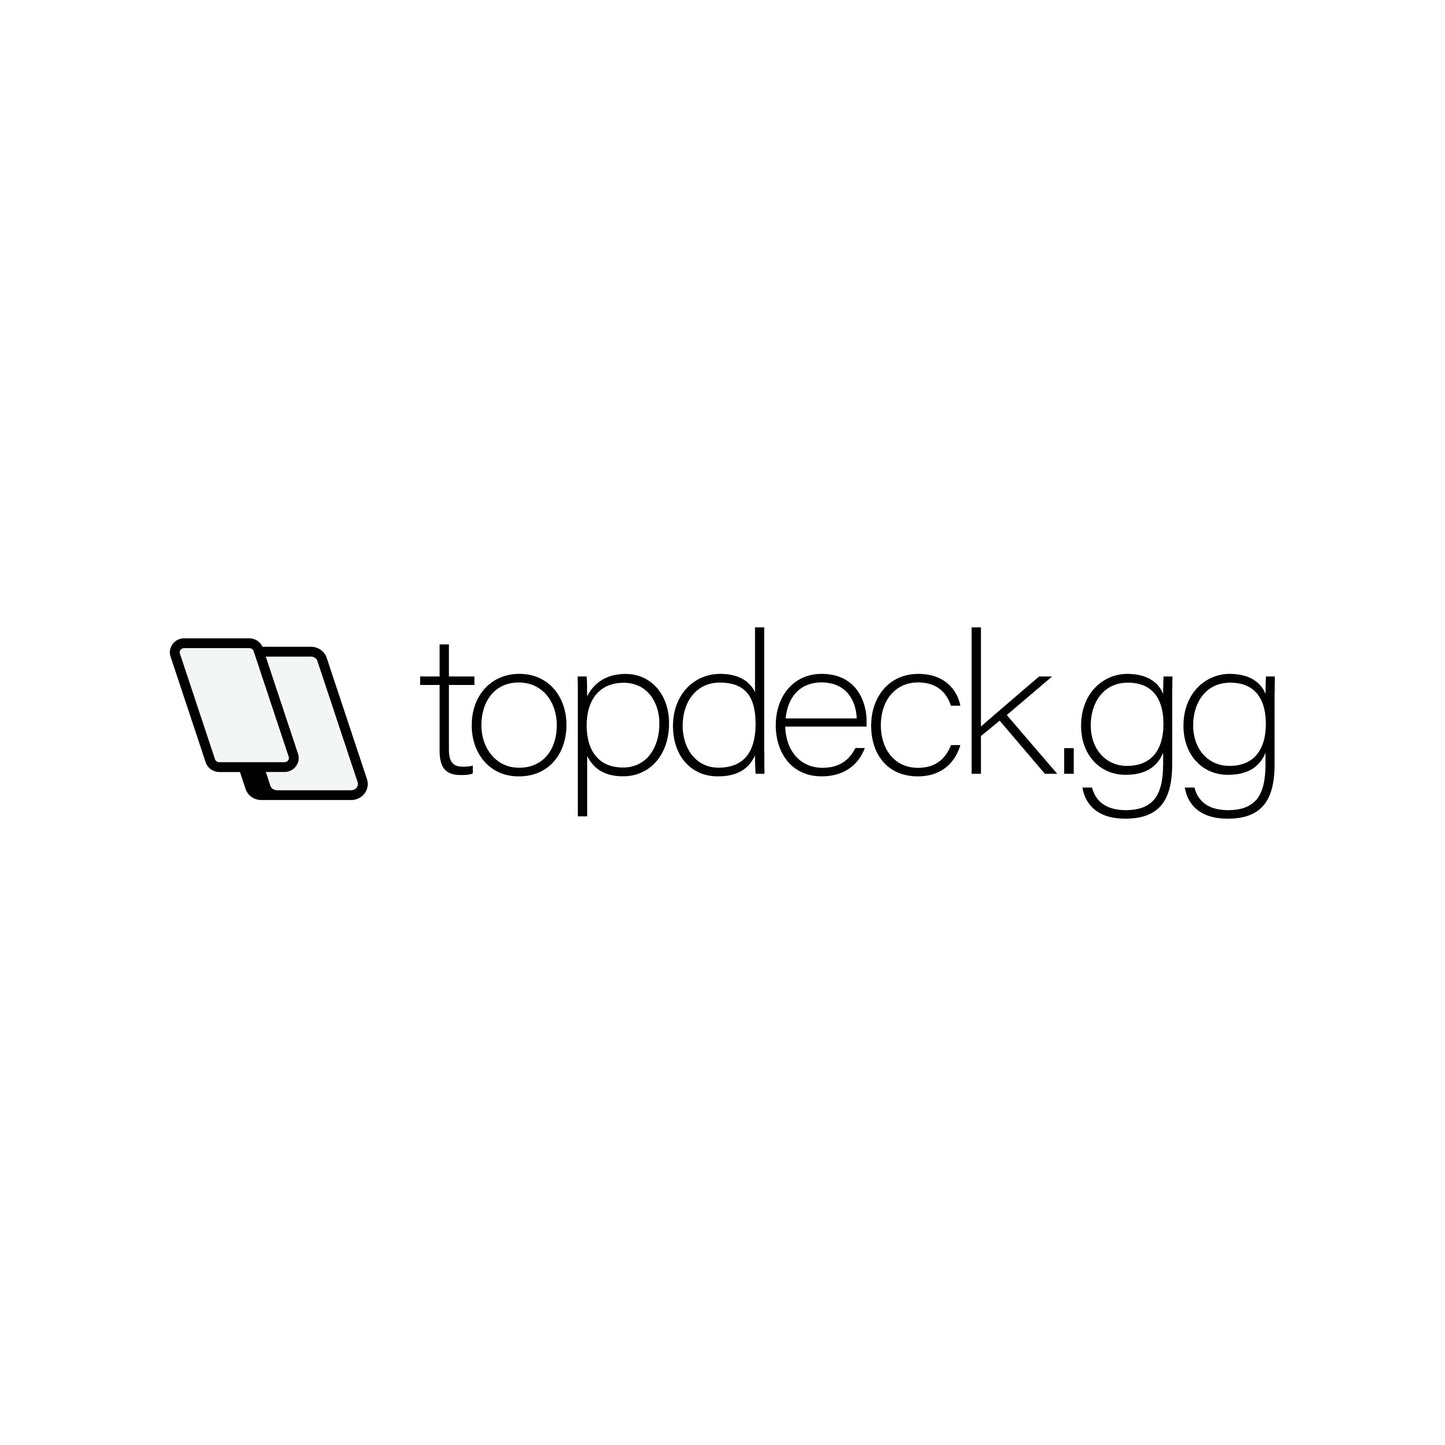 TopDeck.gg Transfer Sticker